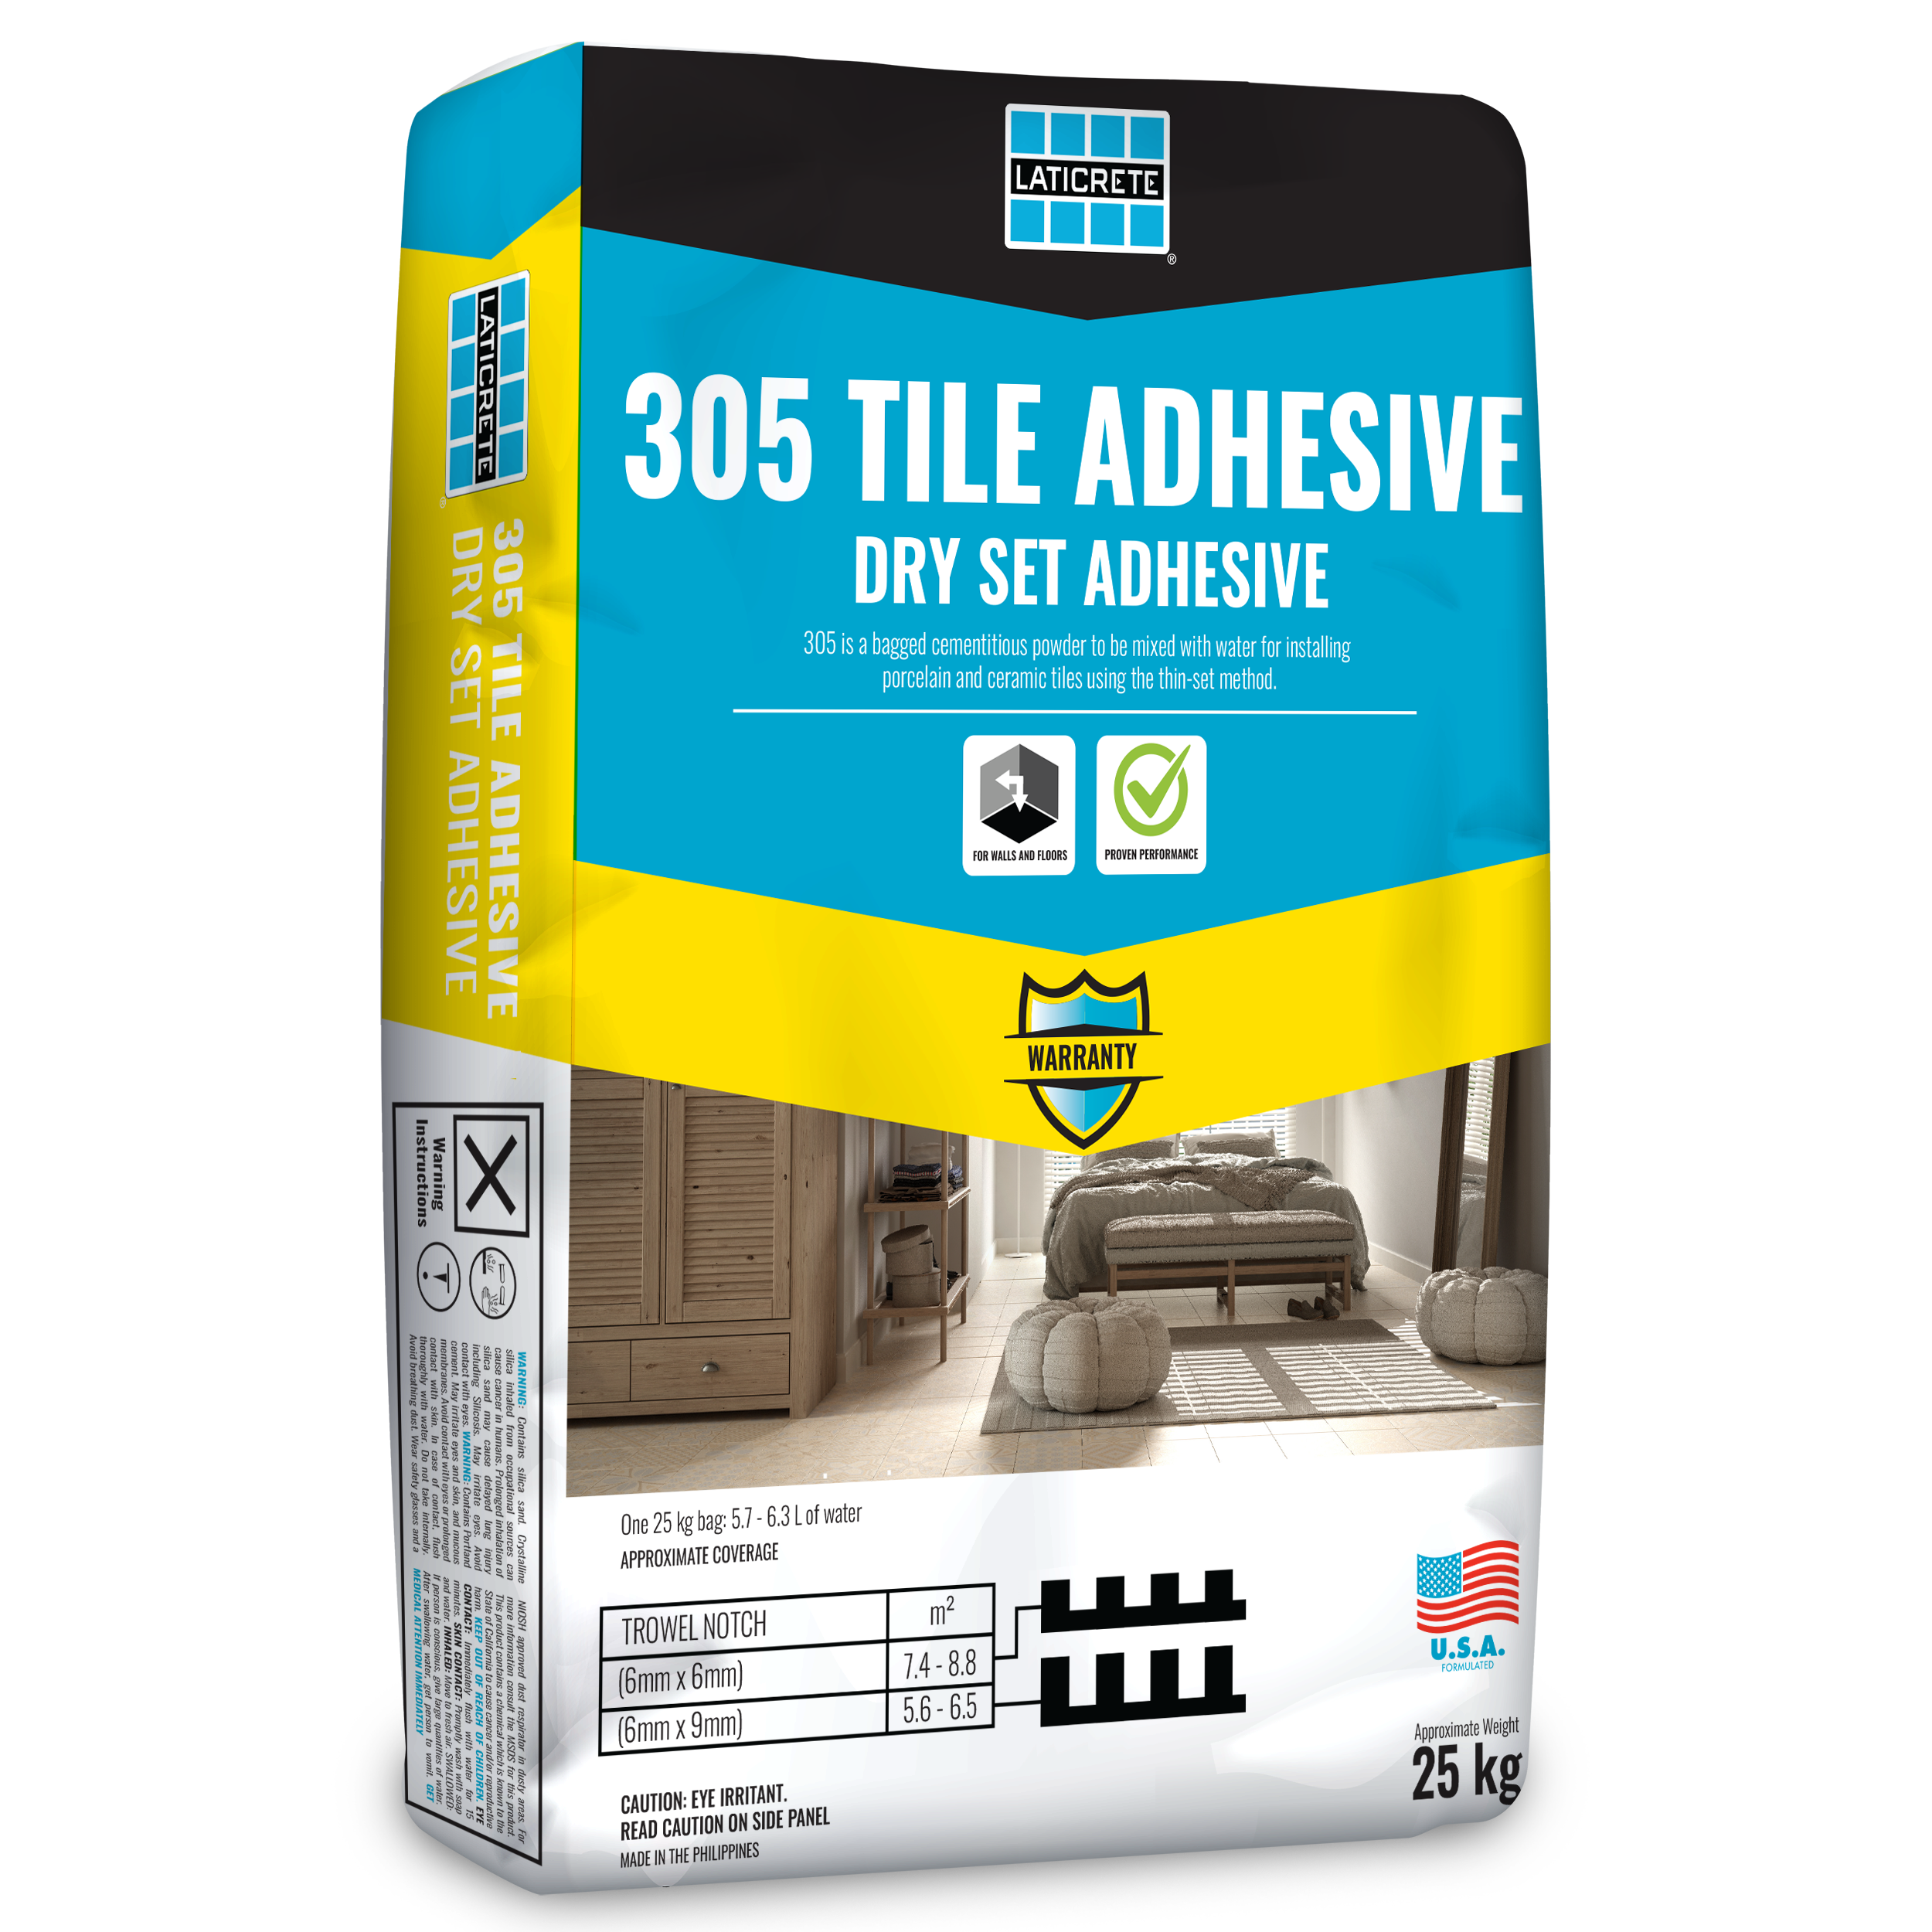 305 Tile Adhesive